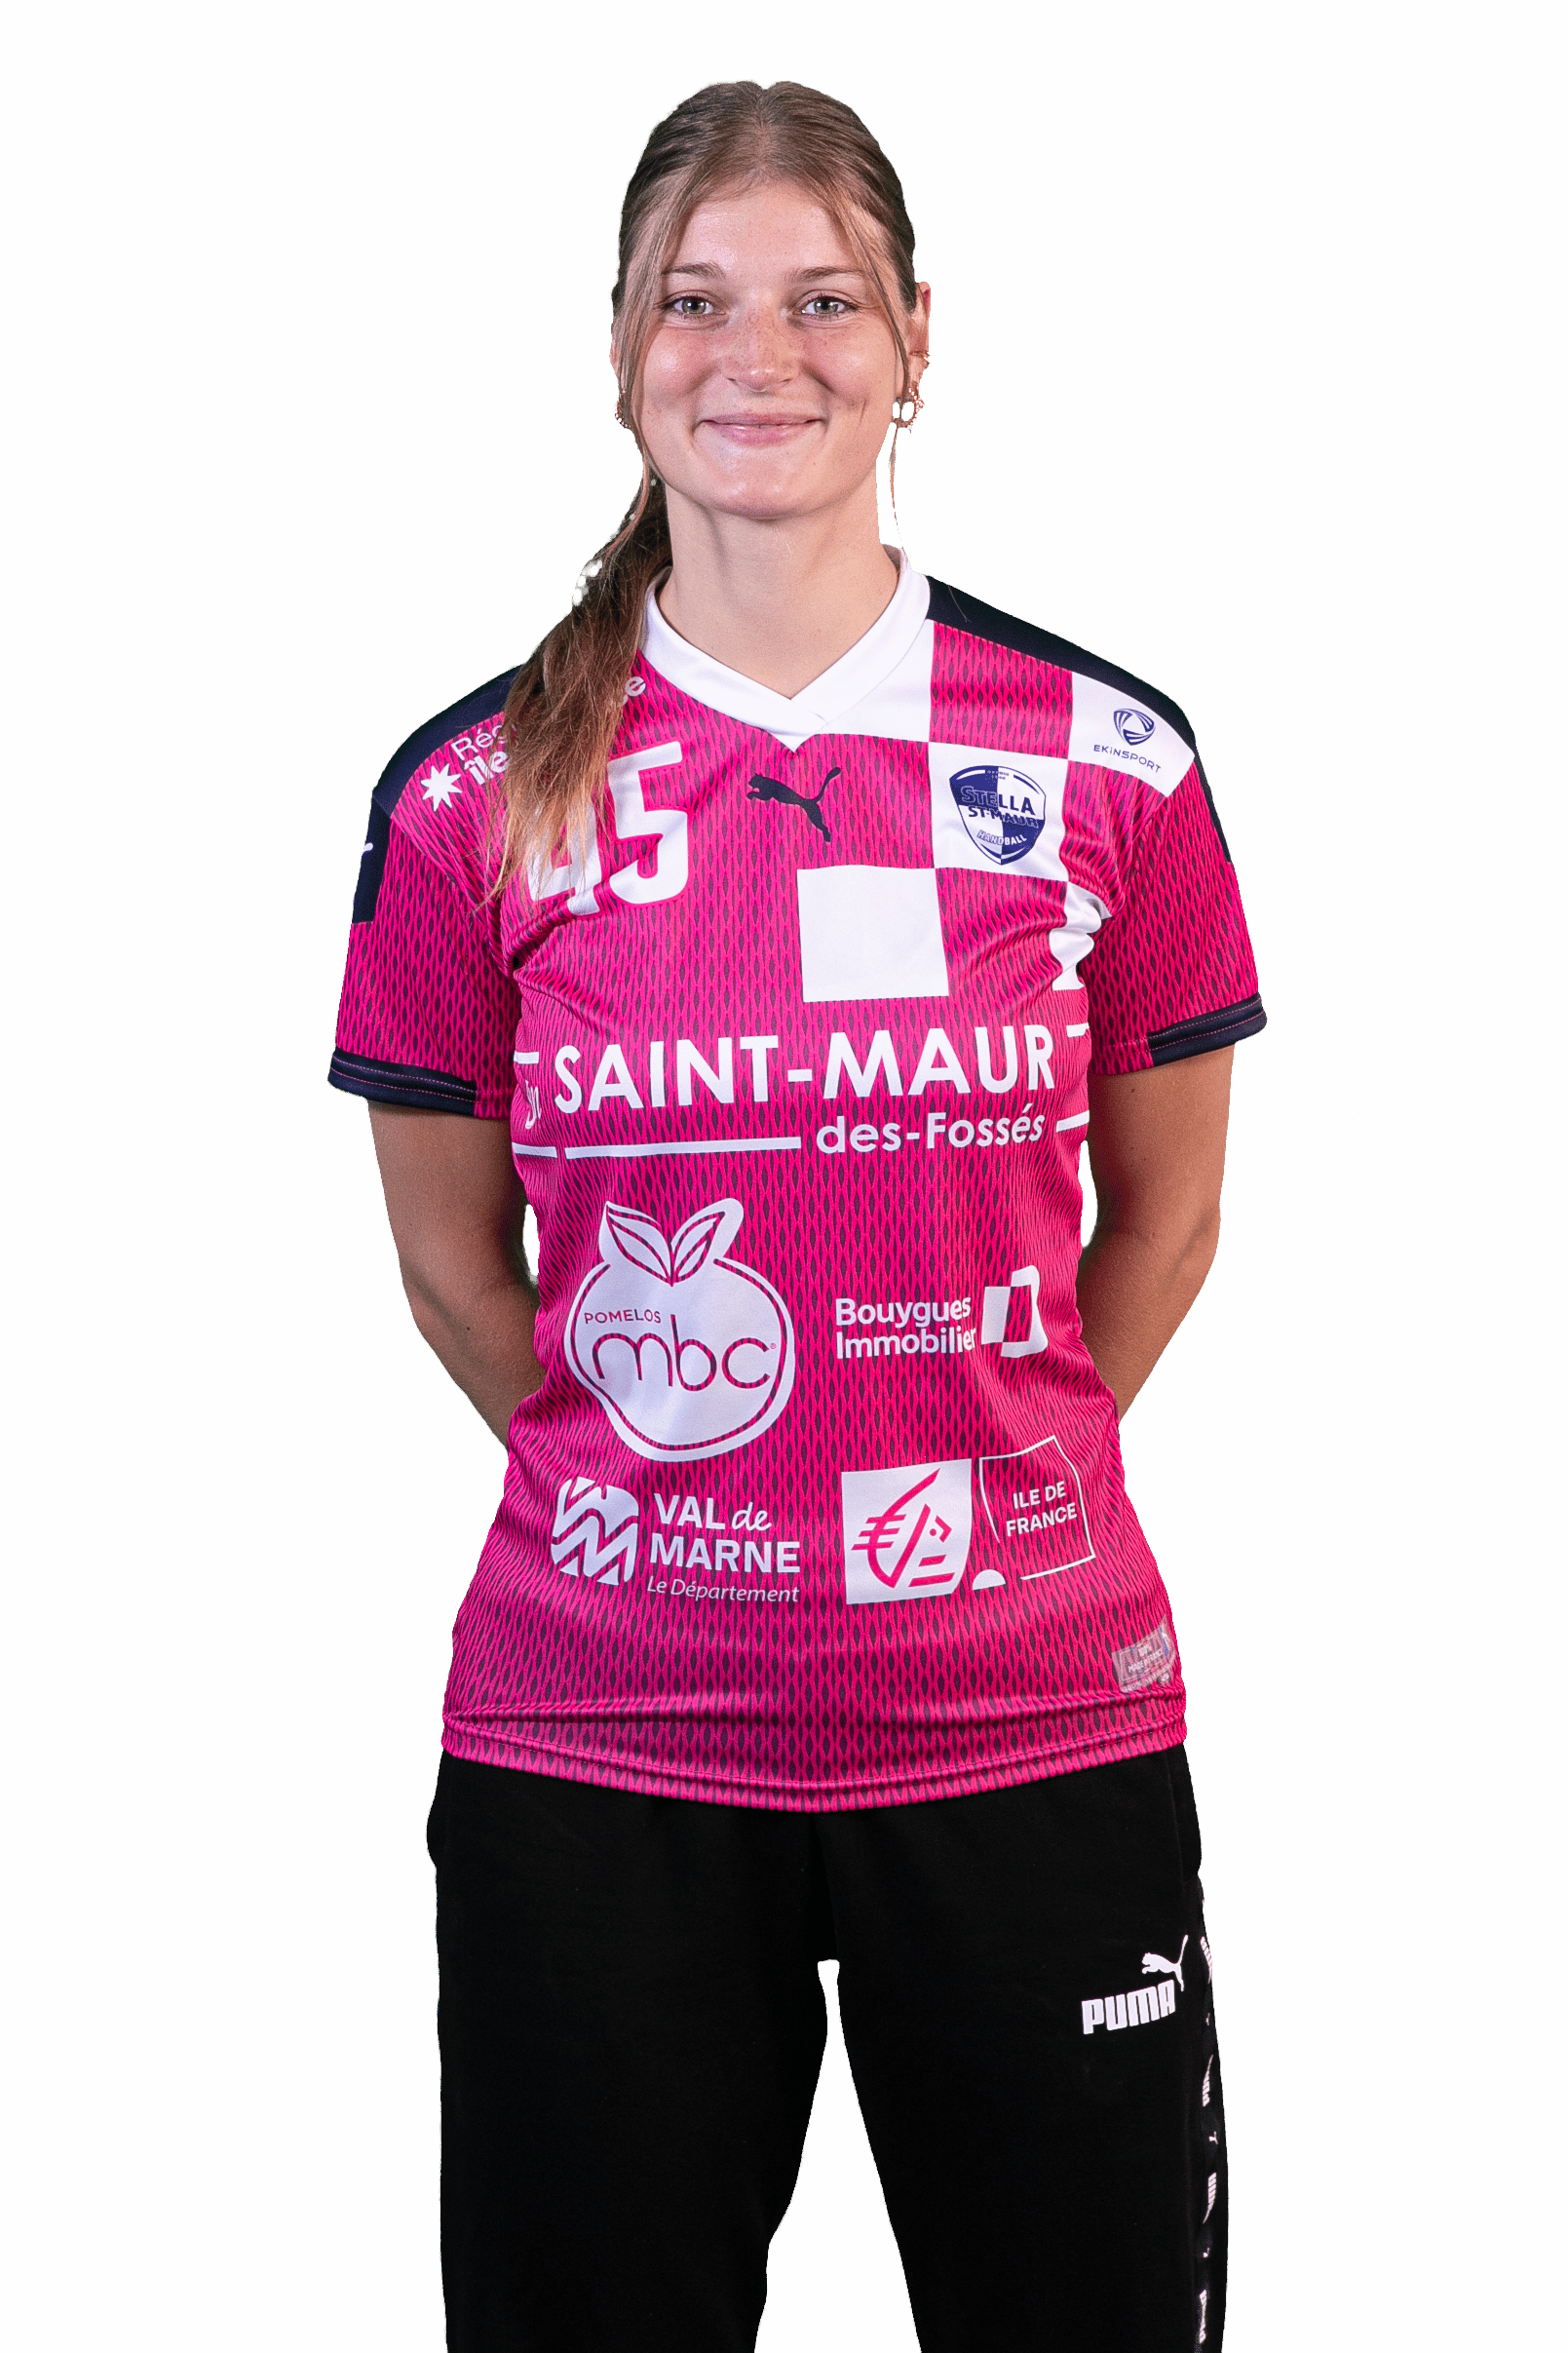 marie-lachat - Gardienne division 2 féminine de handball de Stella St-Maur Handball